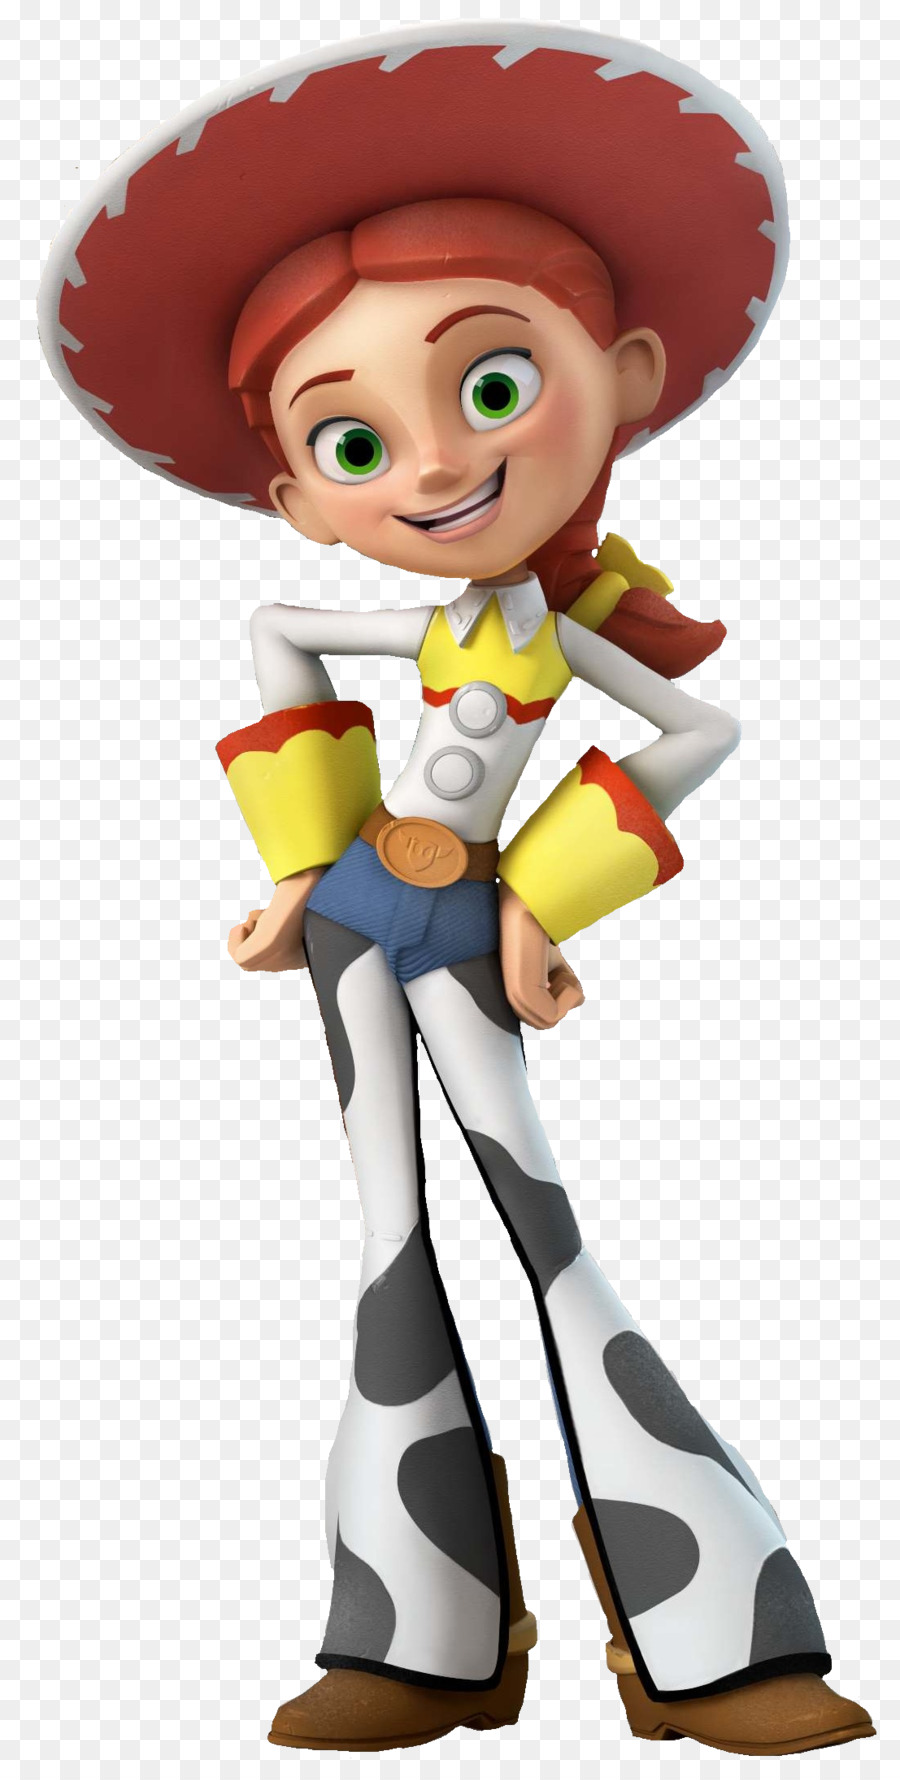 Disney Infinity Jessie Buzz Lightyear Lightning McQueen Sheriff Woody